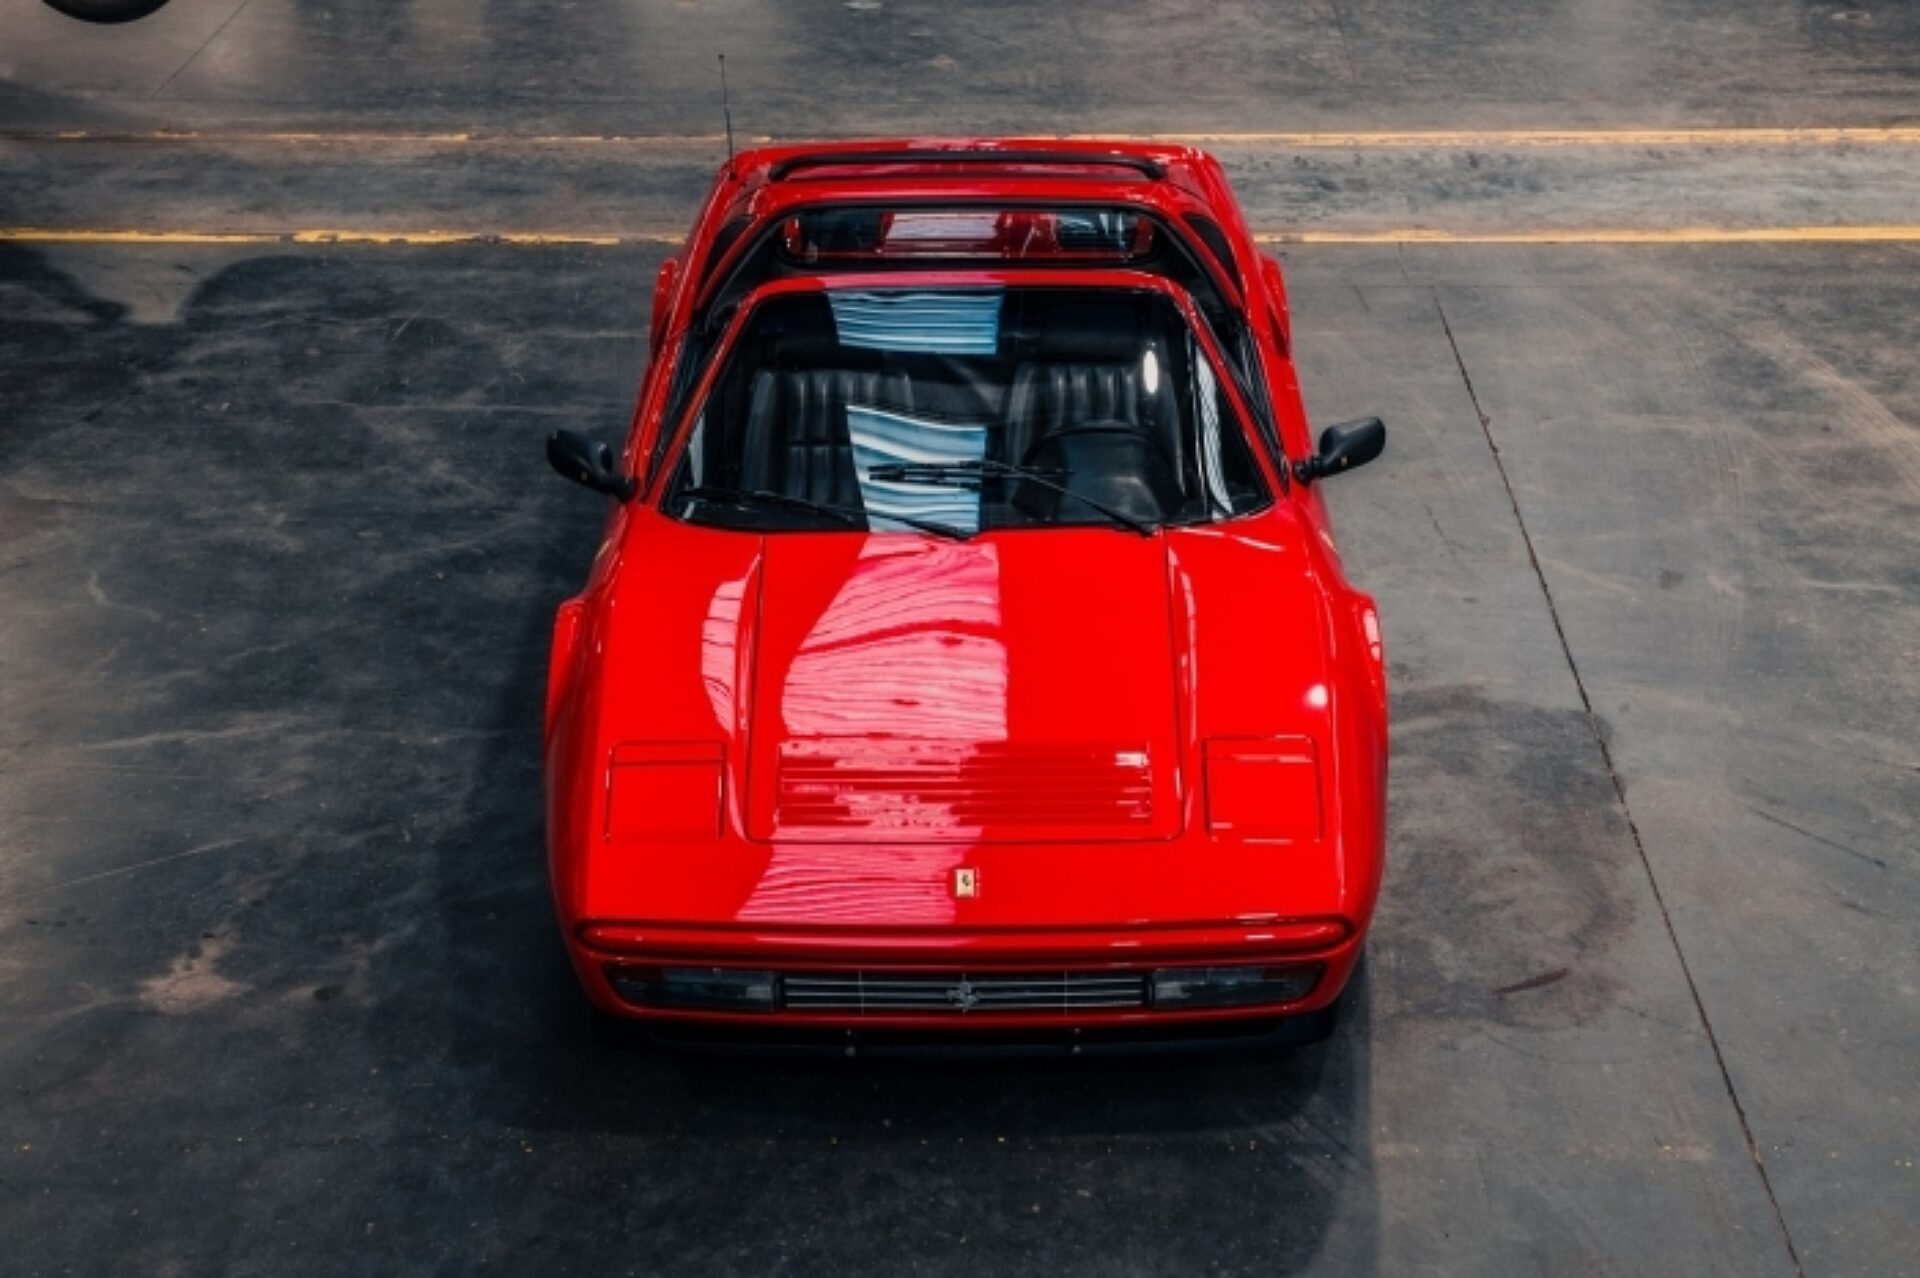 1988 Ferrari 208 GTS Turbo